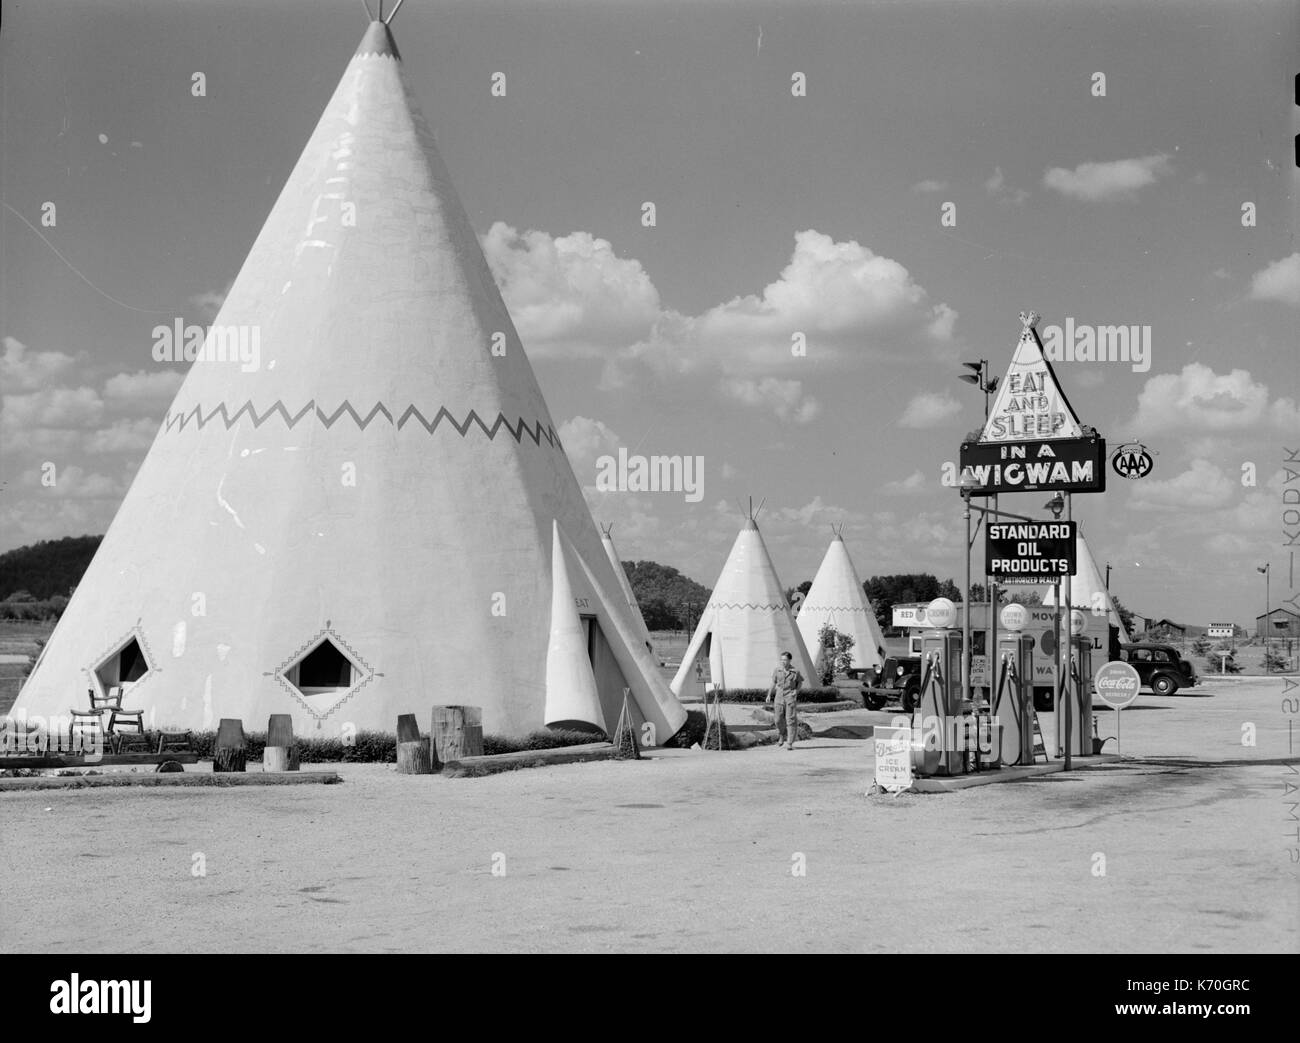 Juli 1940, Bardstown, Kentucky - Kabinen Nachahmung der Indischen teepee für Touristen entlang der Autobahn. Foto von Marion Post Wolcott. Juli 1940, Bardstown, Kentucky. Stockfoto